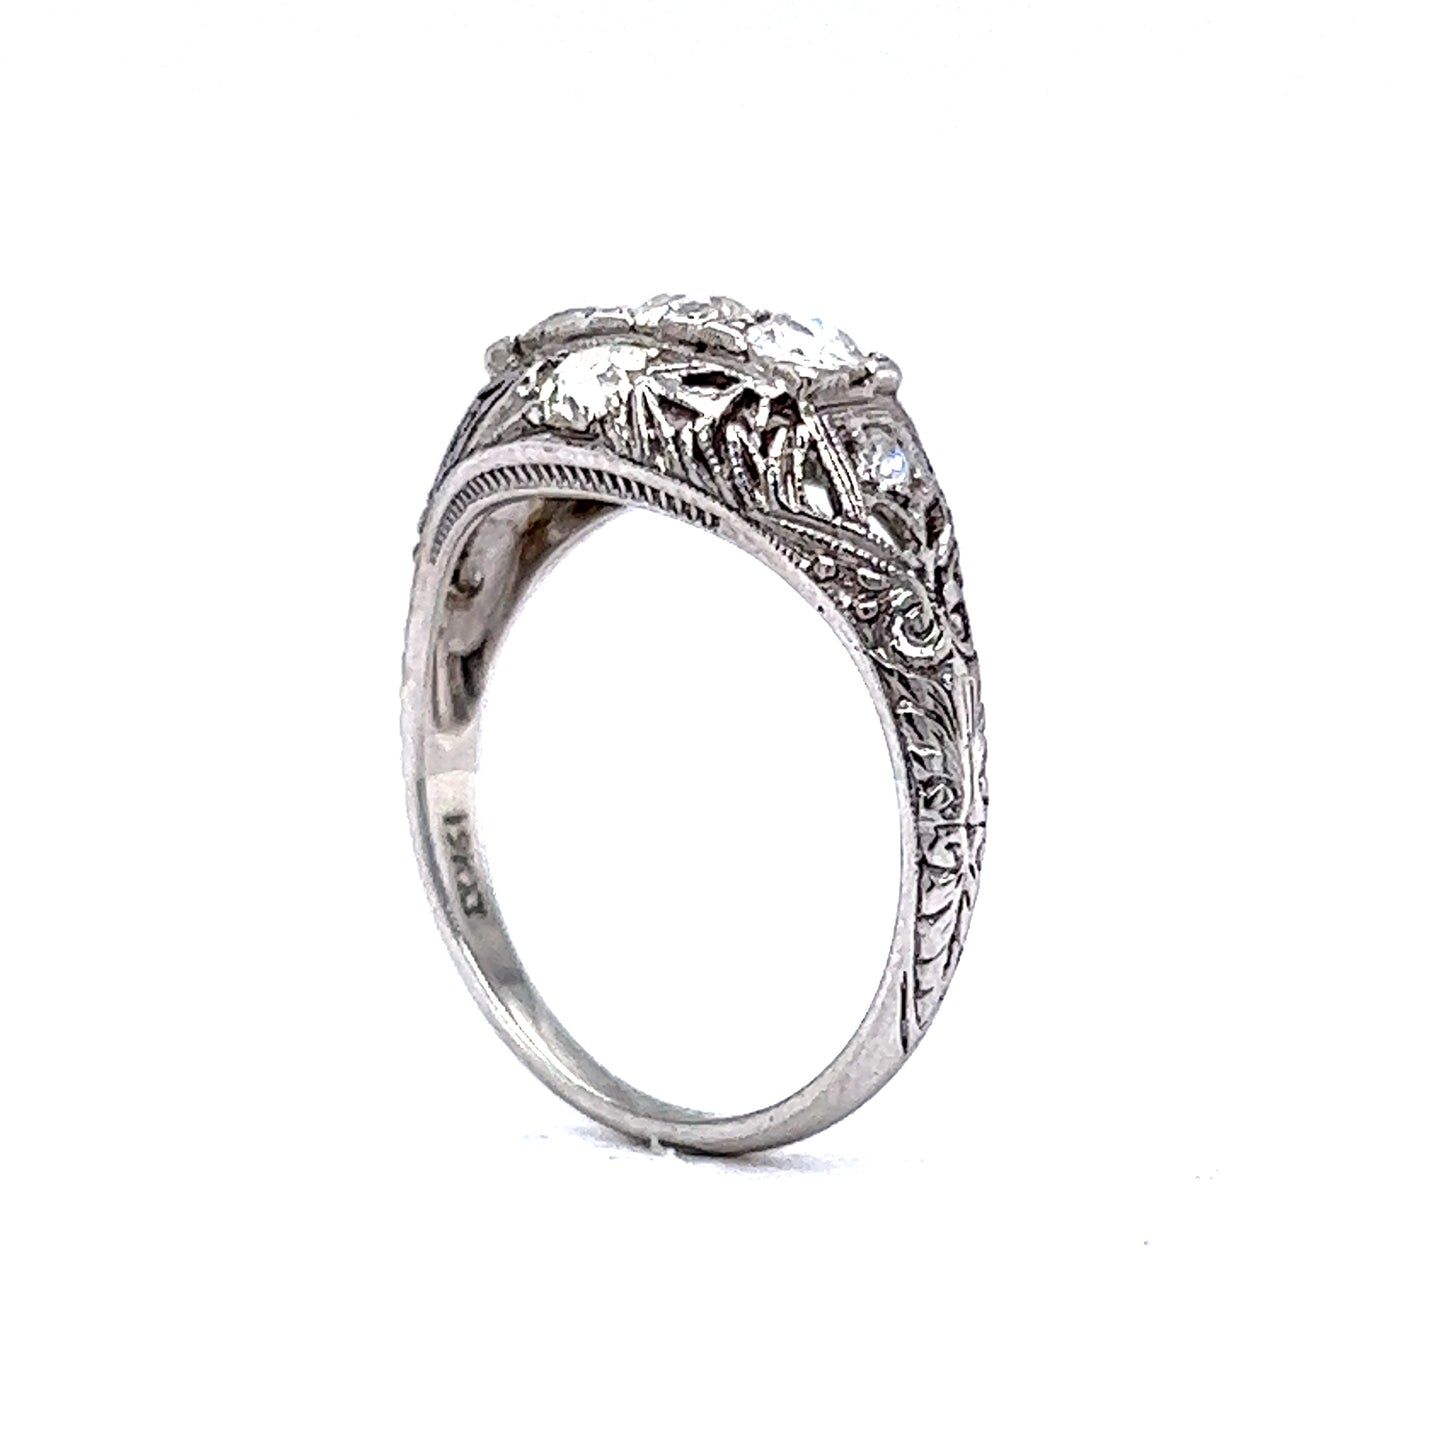 Filigree Five Stone Art Deco Diamond Ring in 18k